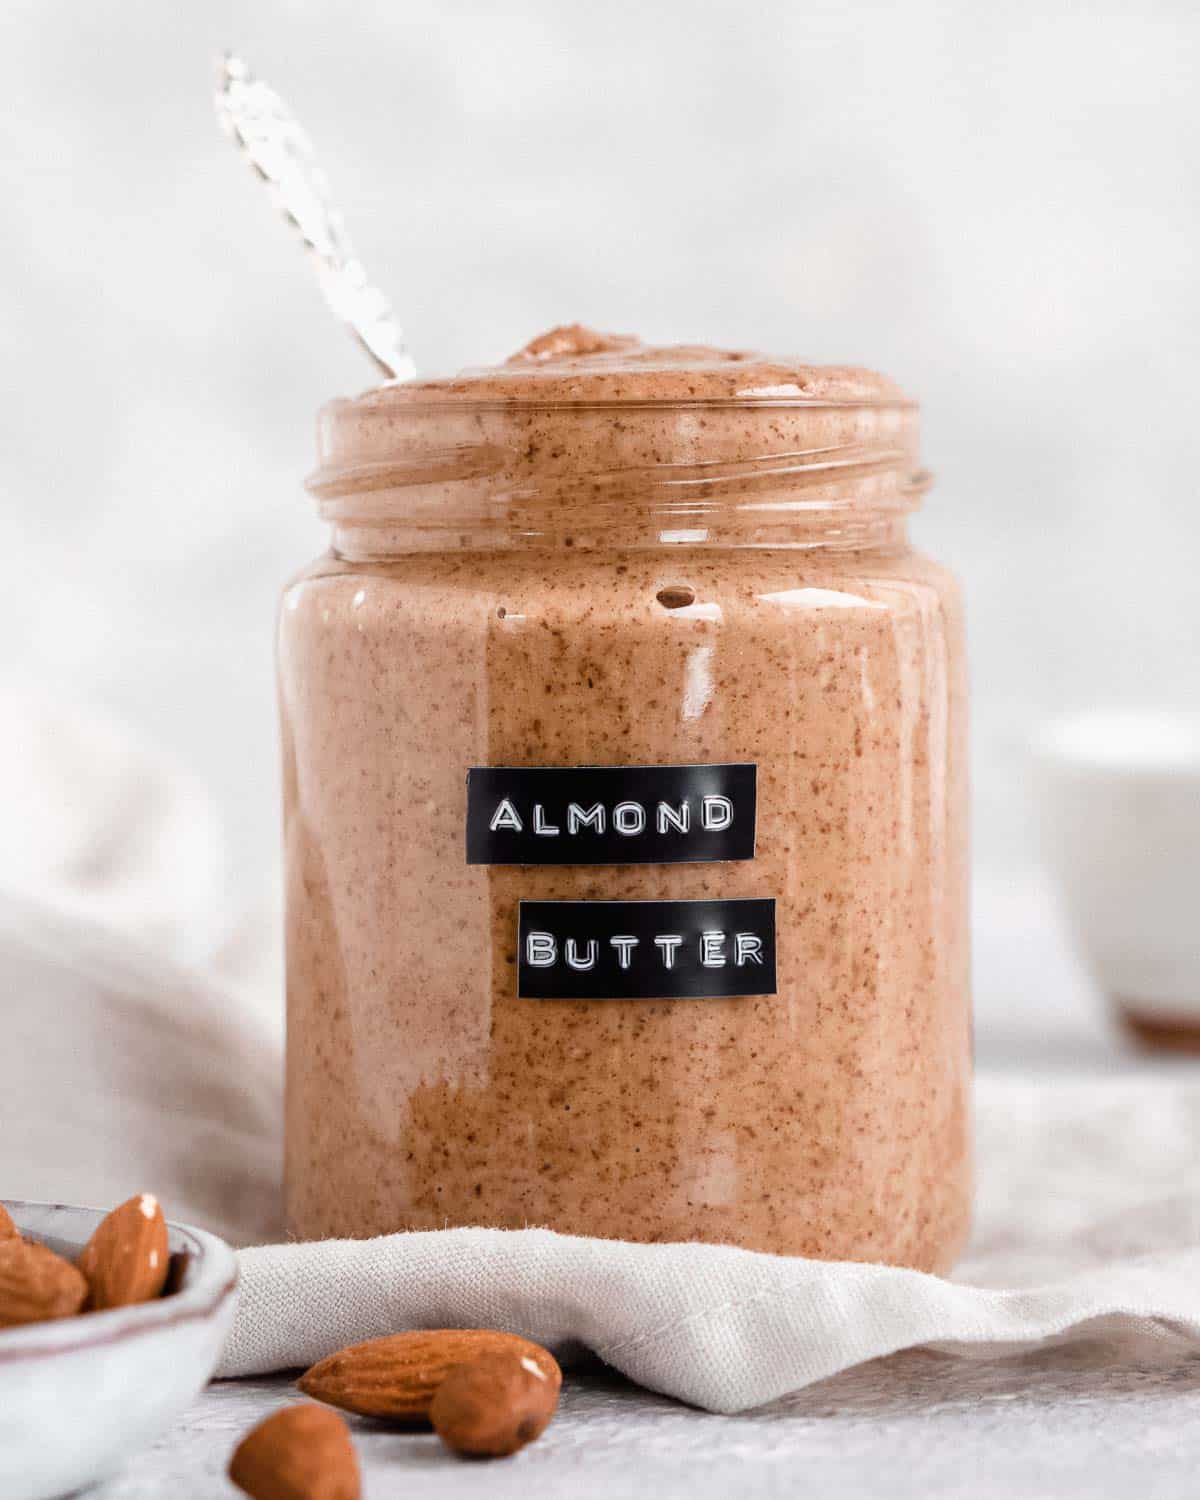 homemade almond butter in a jar.